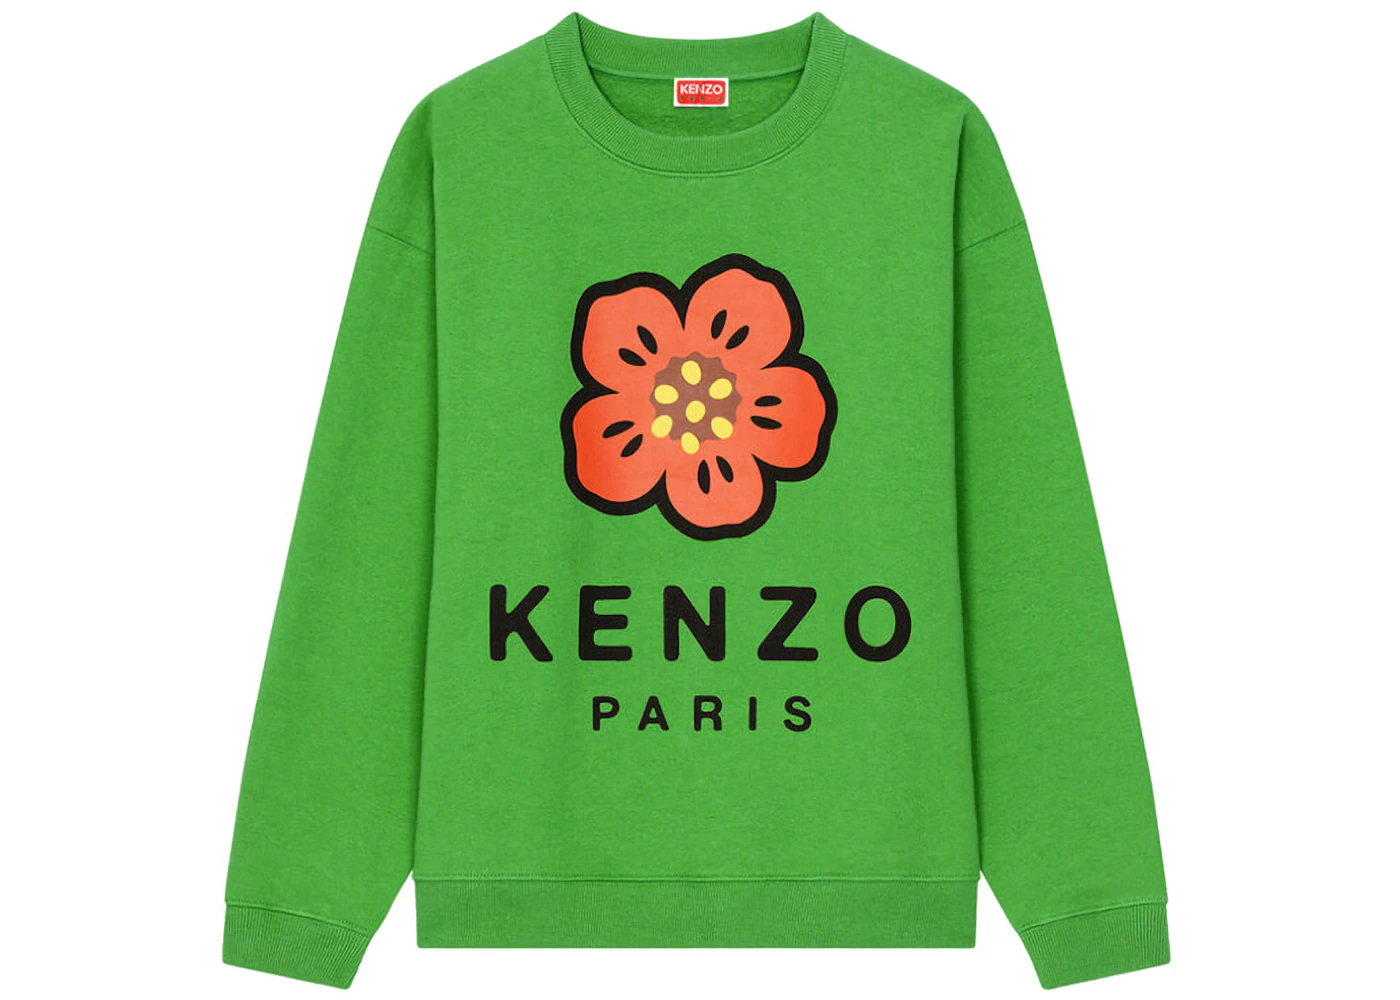 Kenzo Black & Green Monogram Seasonal Jacket Kenzo